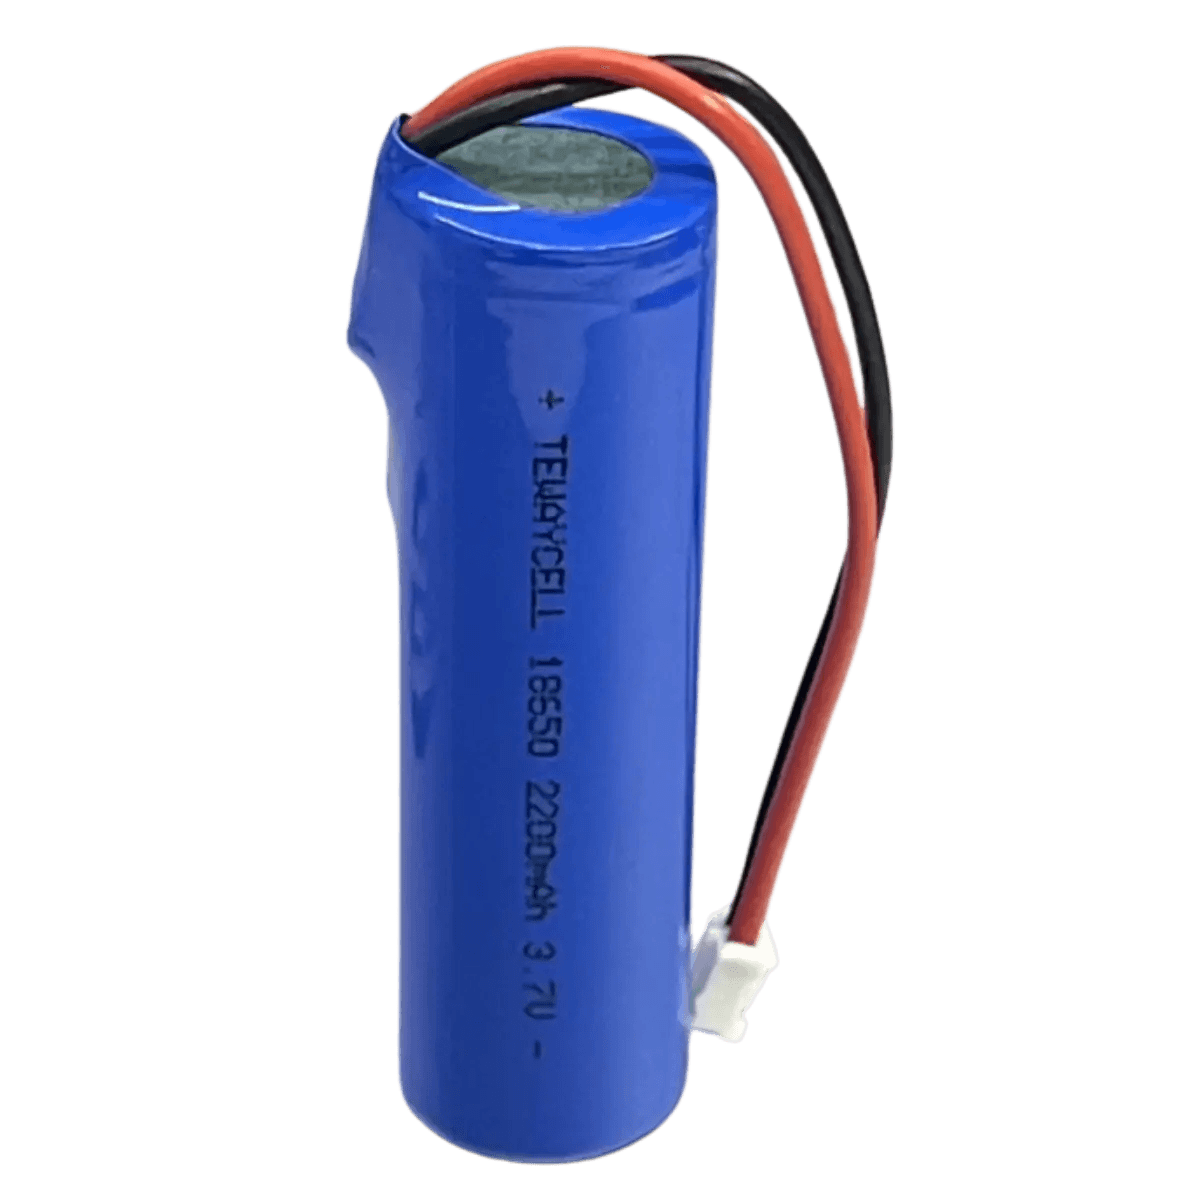 Batterie 18650 Li-ion 3.7V 2200mAh avec connecteur